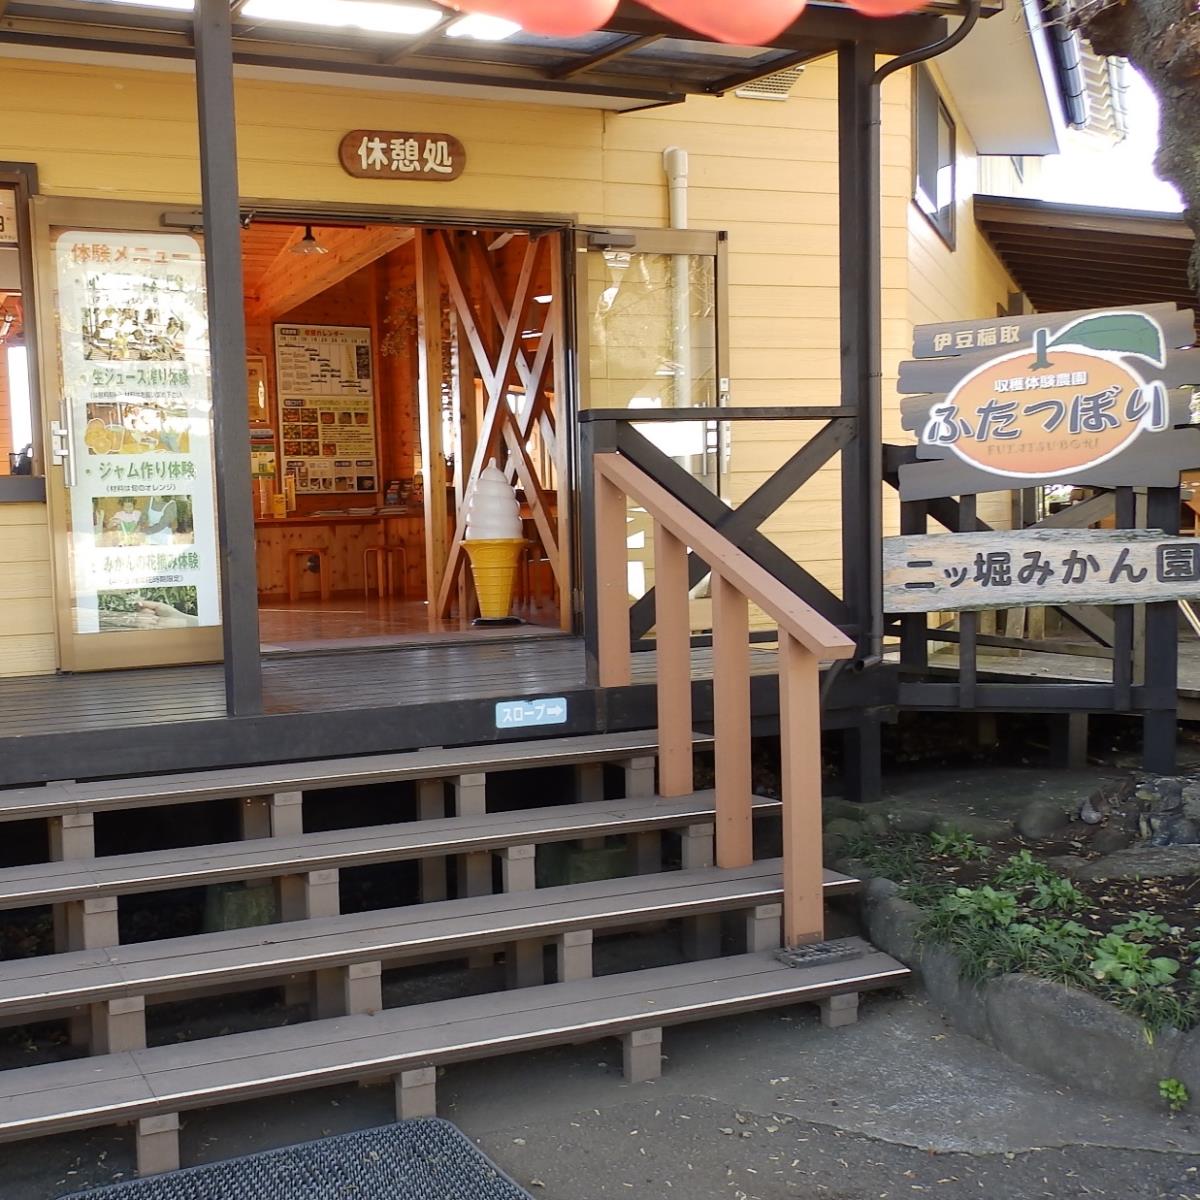 画像伊豆のカフェ　おしゃれなカフェ　インスタ映えするフォトスポットです。